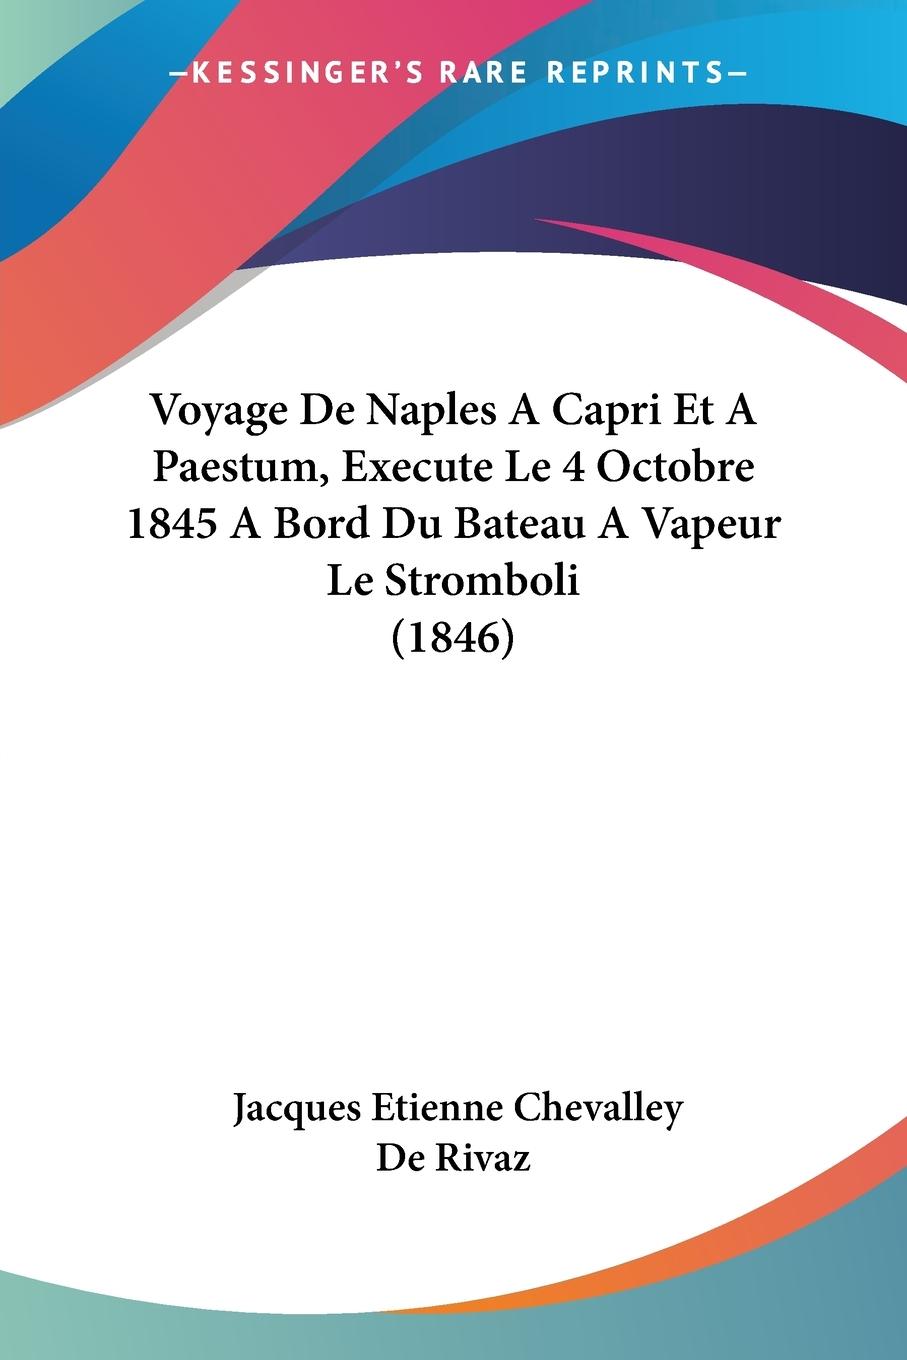 Voyage De Naples A Capri Et A Paestum, Execute Le 4 Octobre 1845 A Bord Du Bateau A Vapeur Le Stromboli (1846) - De Rivaz, Jacques Etienne Chevalley